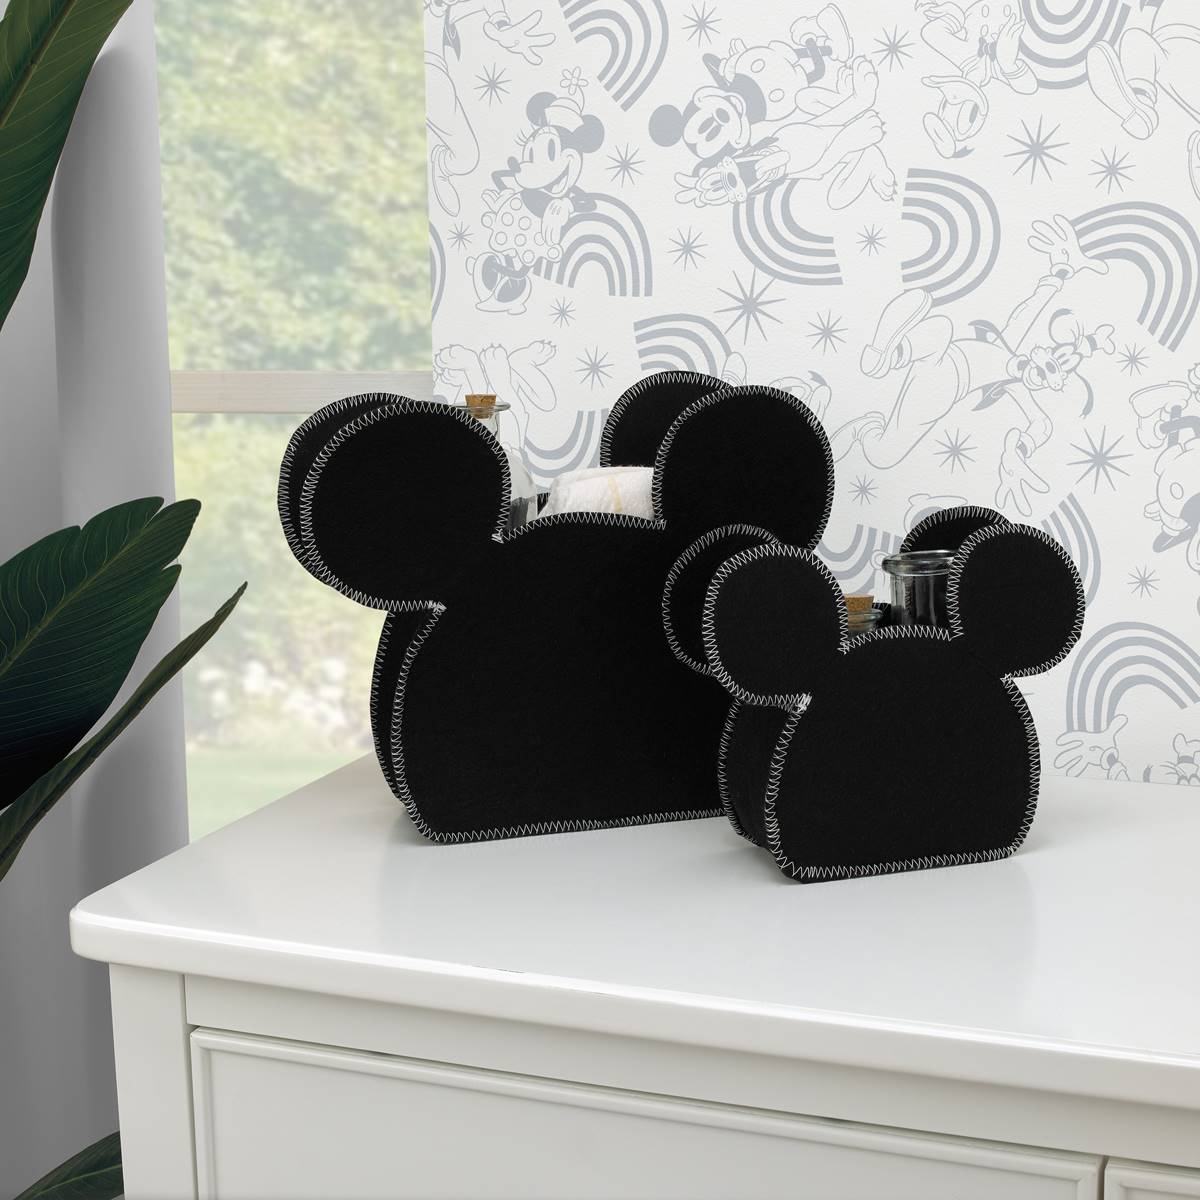 Disney 2pc. Mickey Mouse Storage Caddy